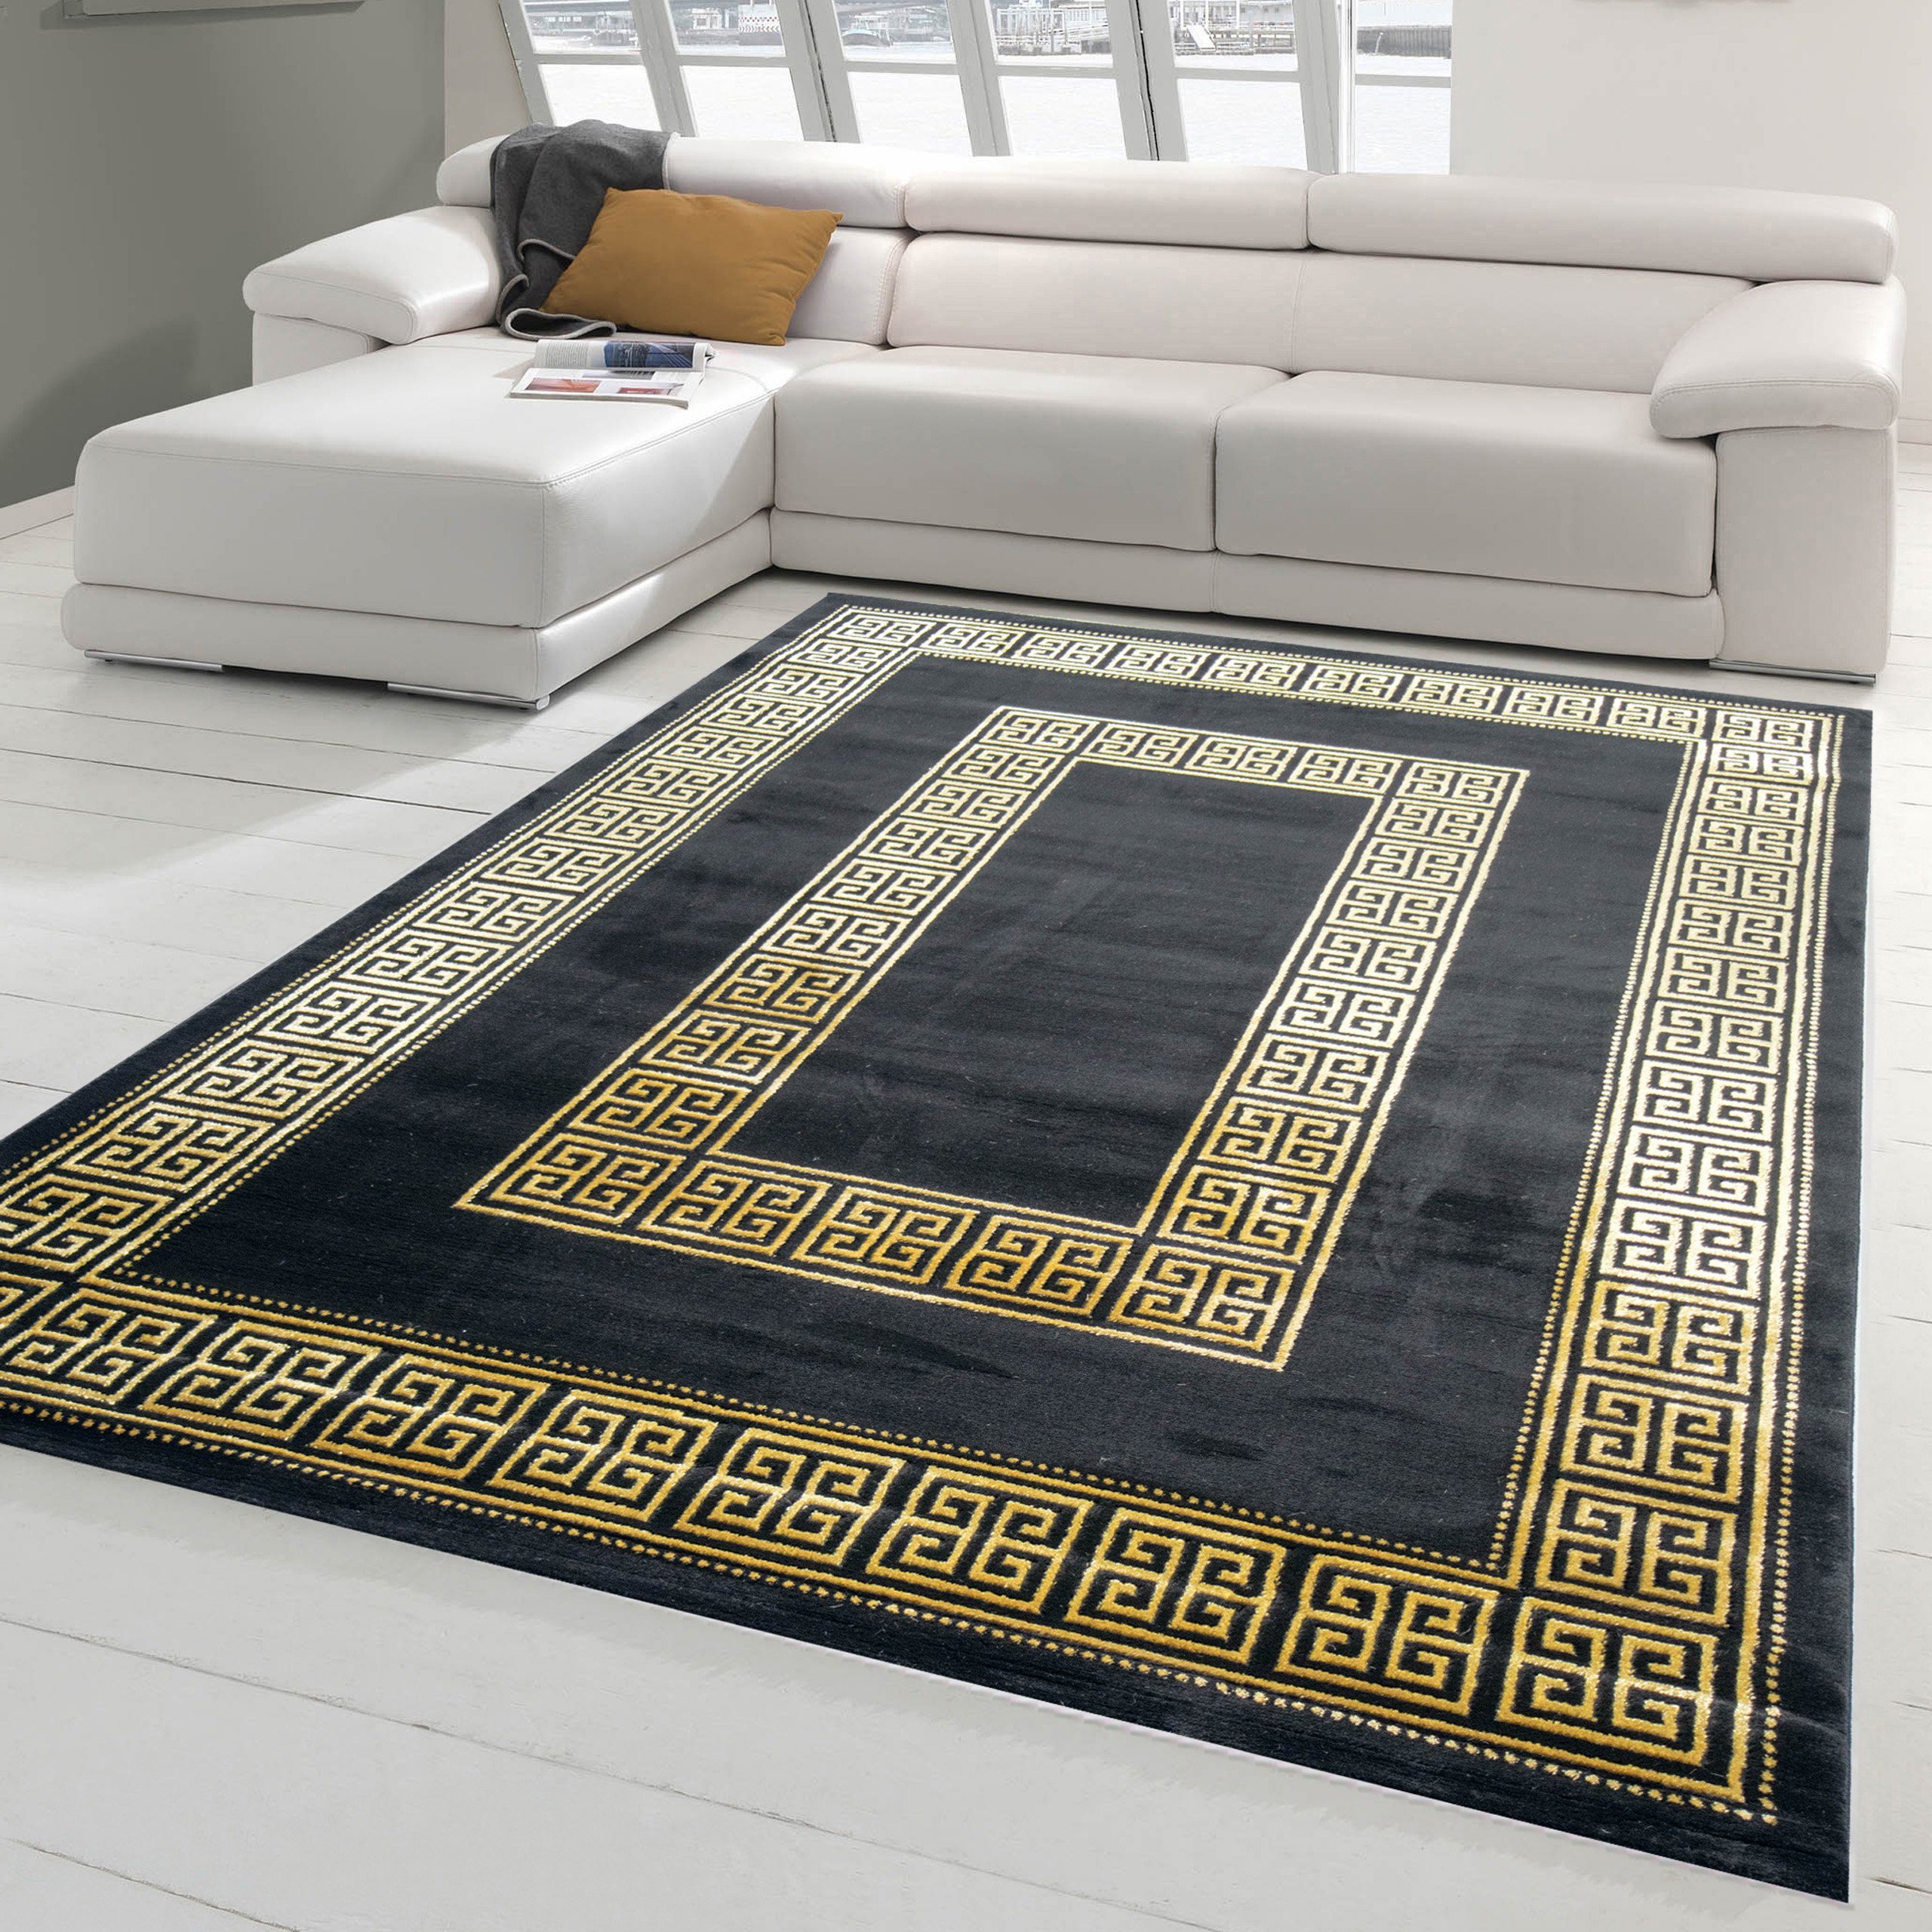 Teppich Teppich modern mit klassischer Bordüre in schwarz gold, Teppich-Traum, rechteckig, Höhe: 12 mm